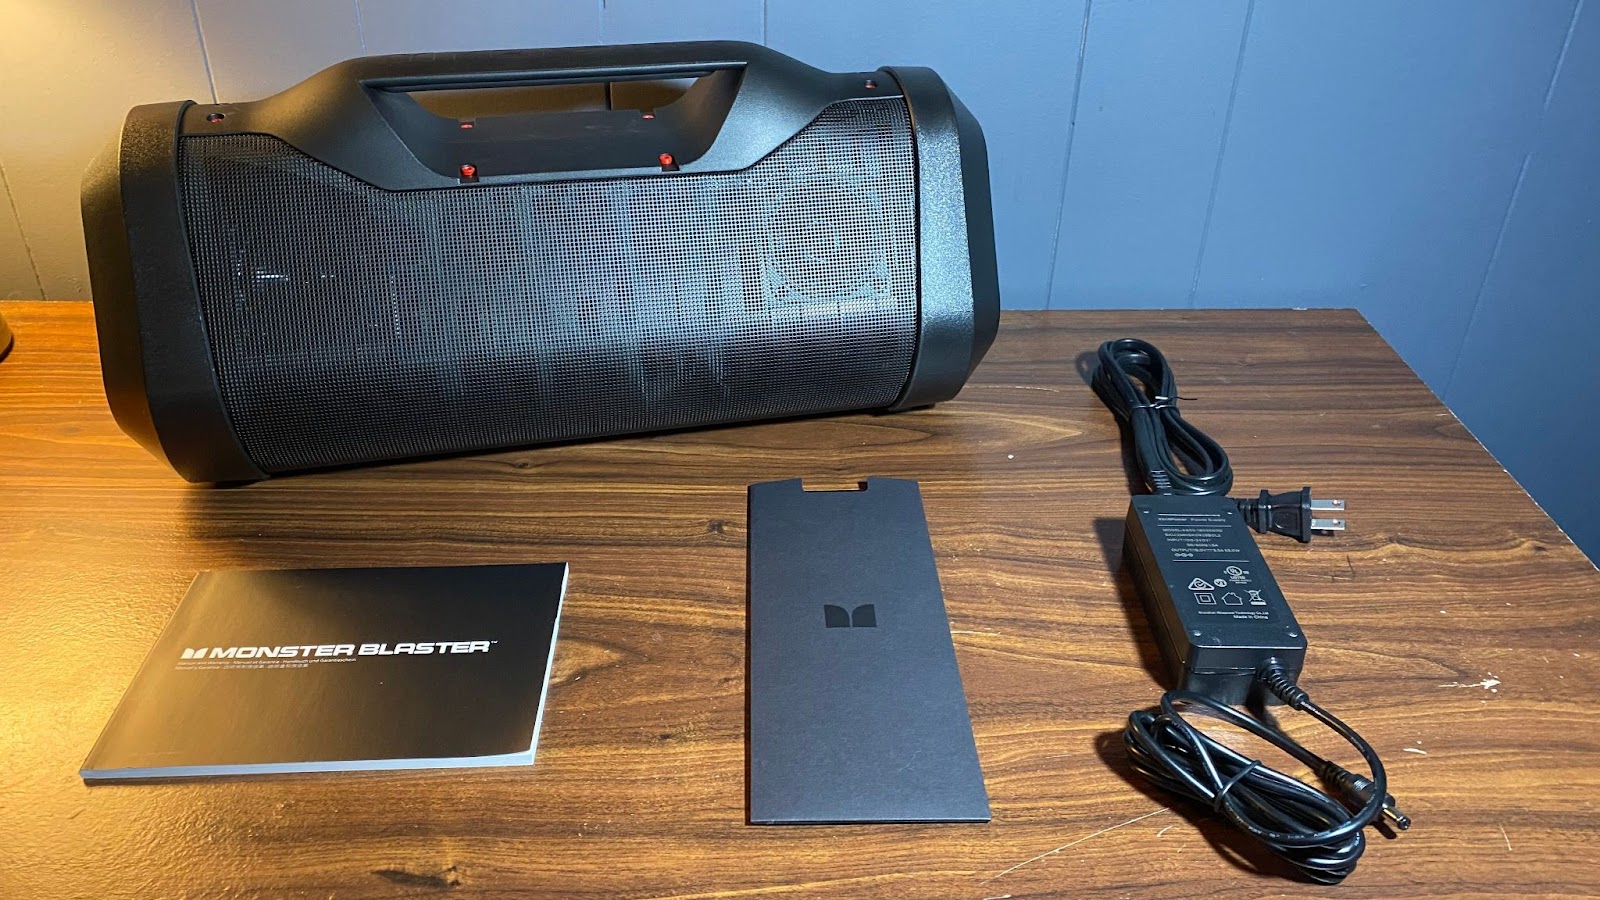 Monster Blaster 3.0 portable boombox speaker review | Best Buy Blog